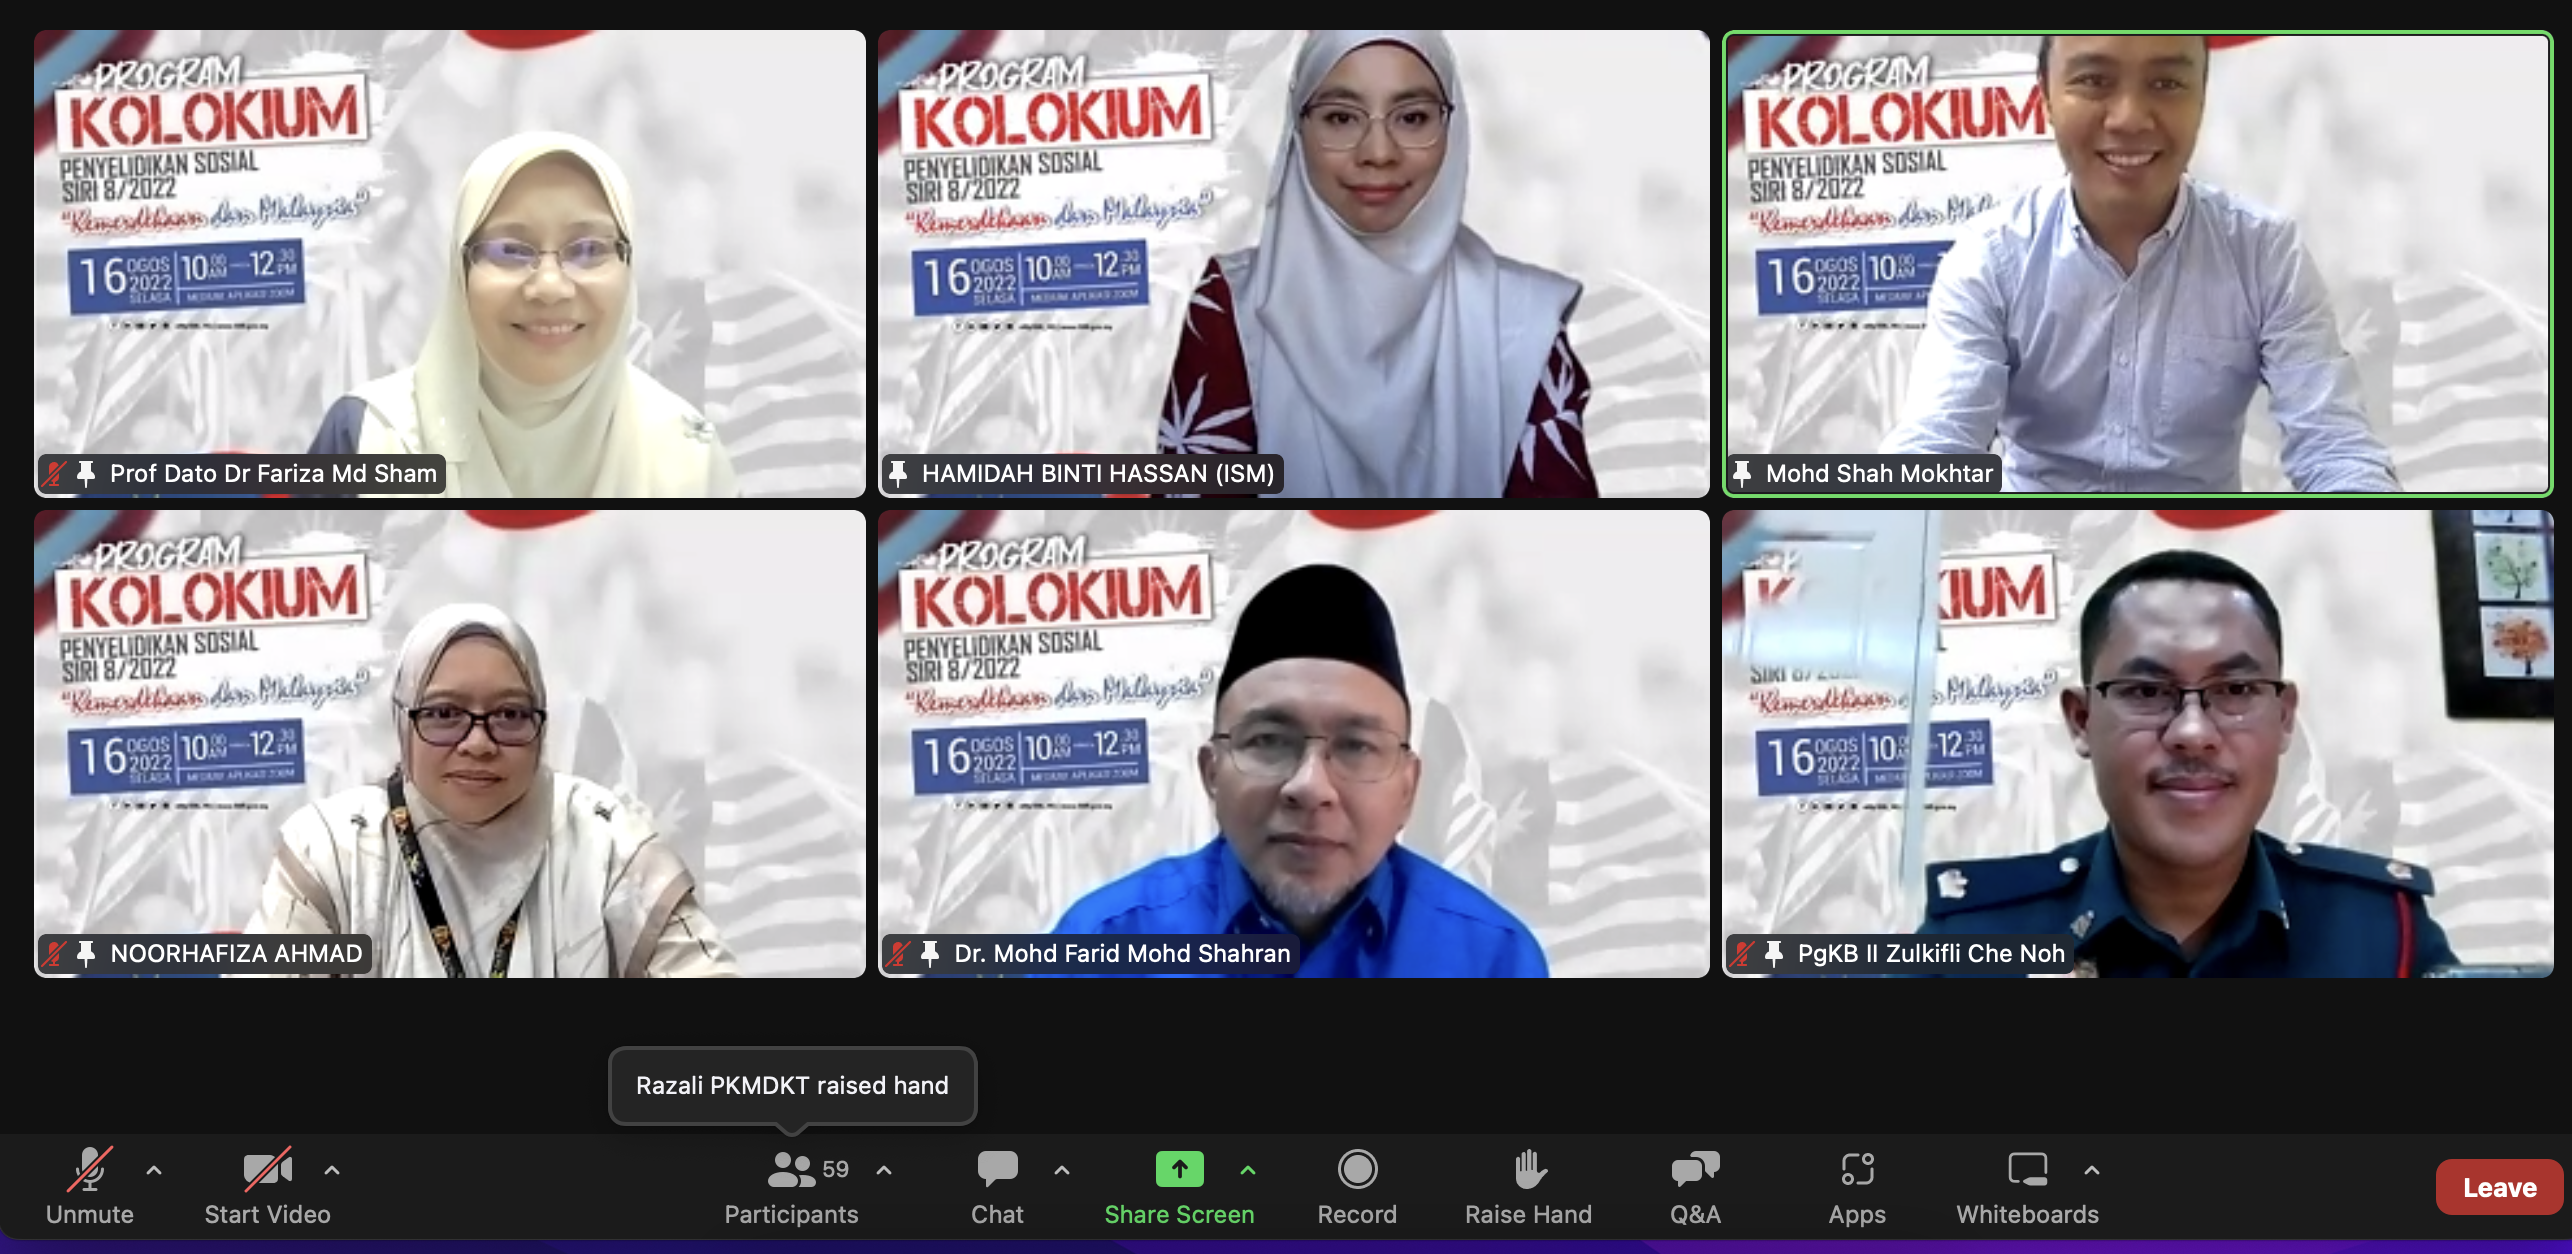 Program Kolokium Penyelidikan Sosial Ism Siri 8-2022 Bertemakan Kemerdekaan Dan Malaysia pic 01